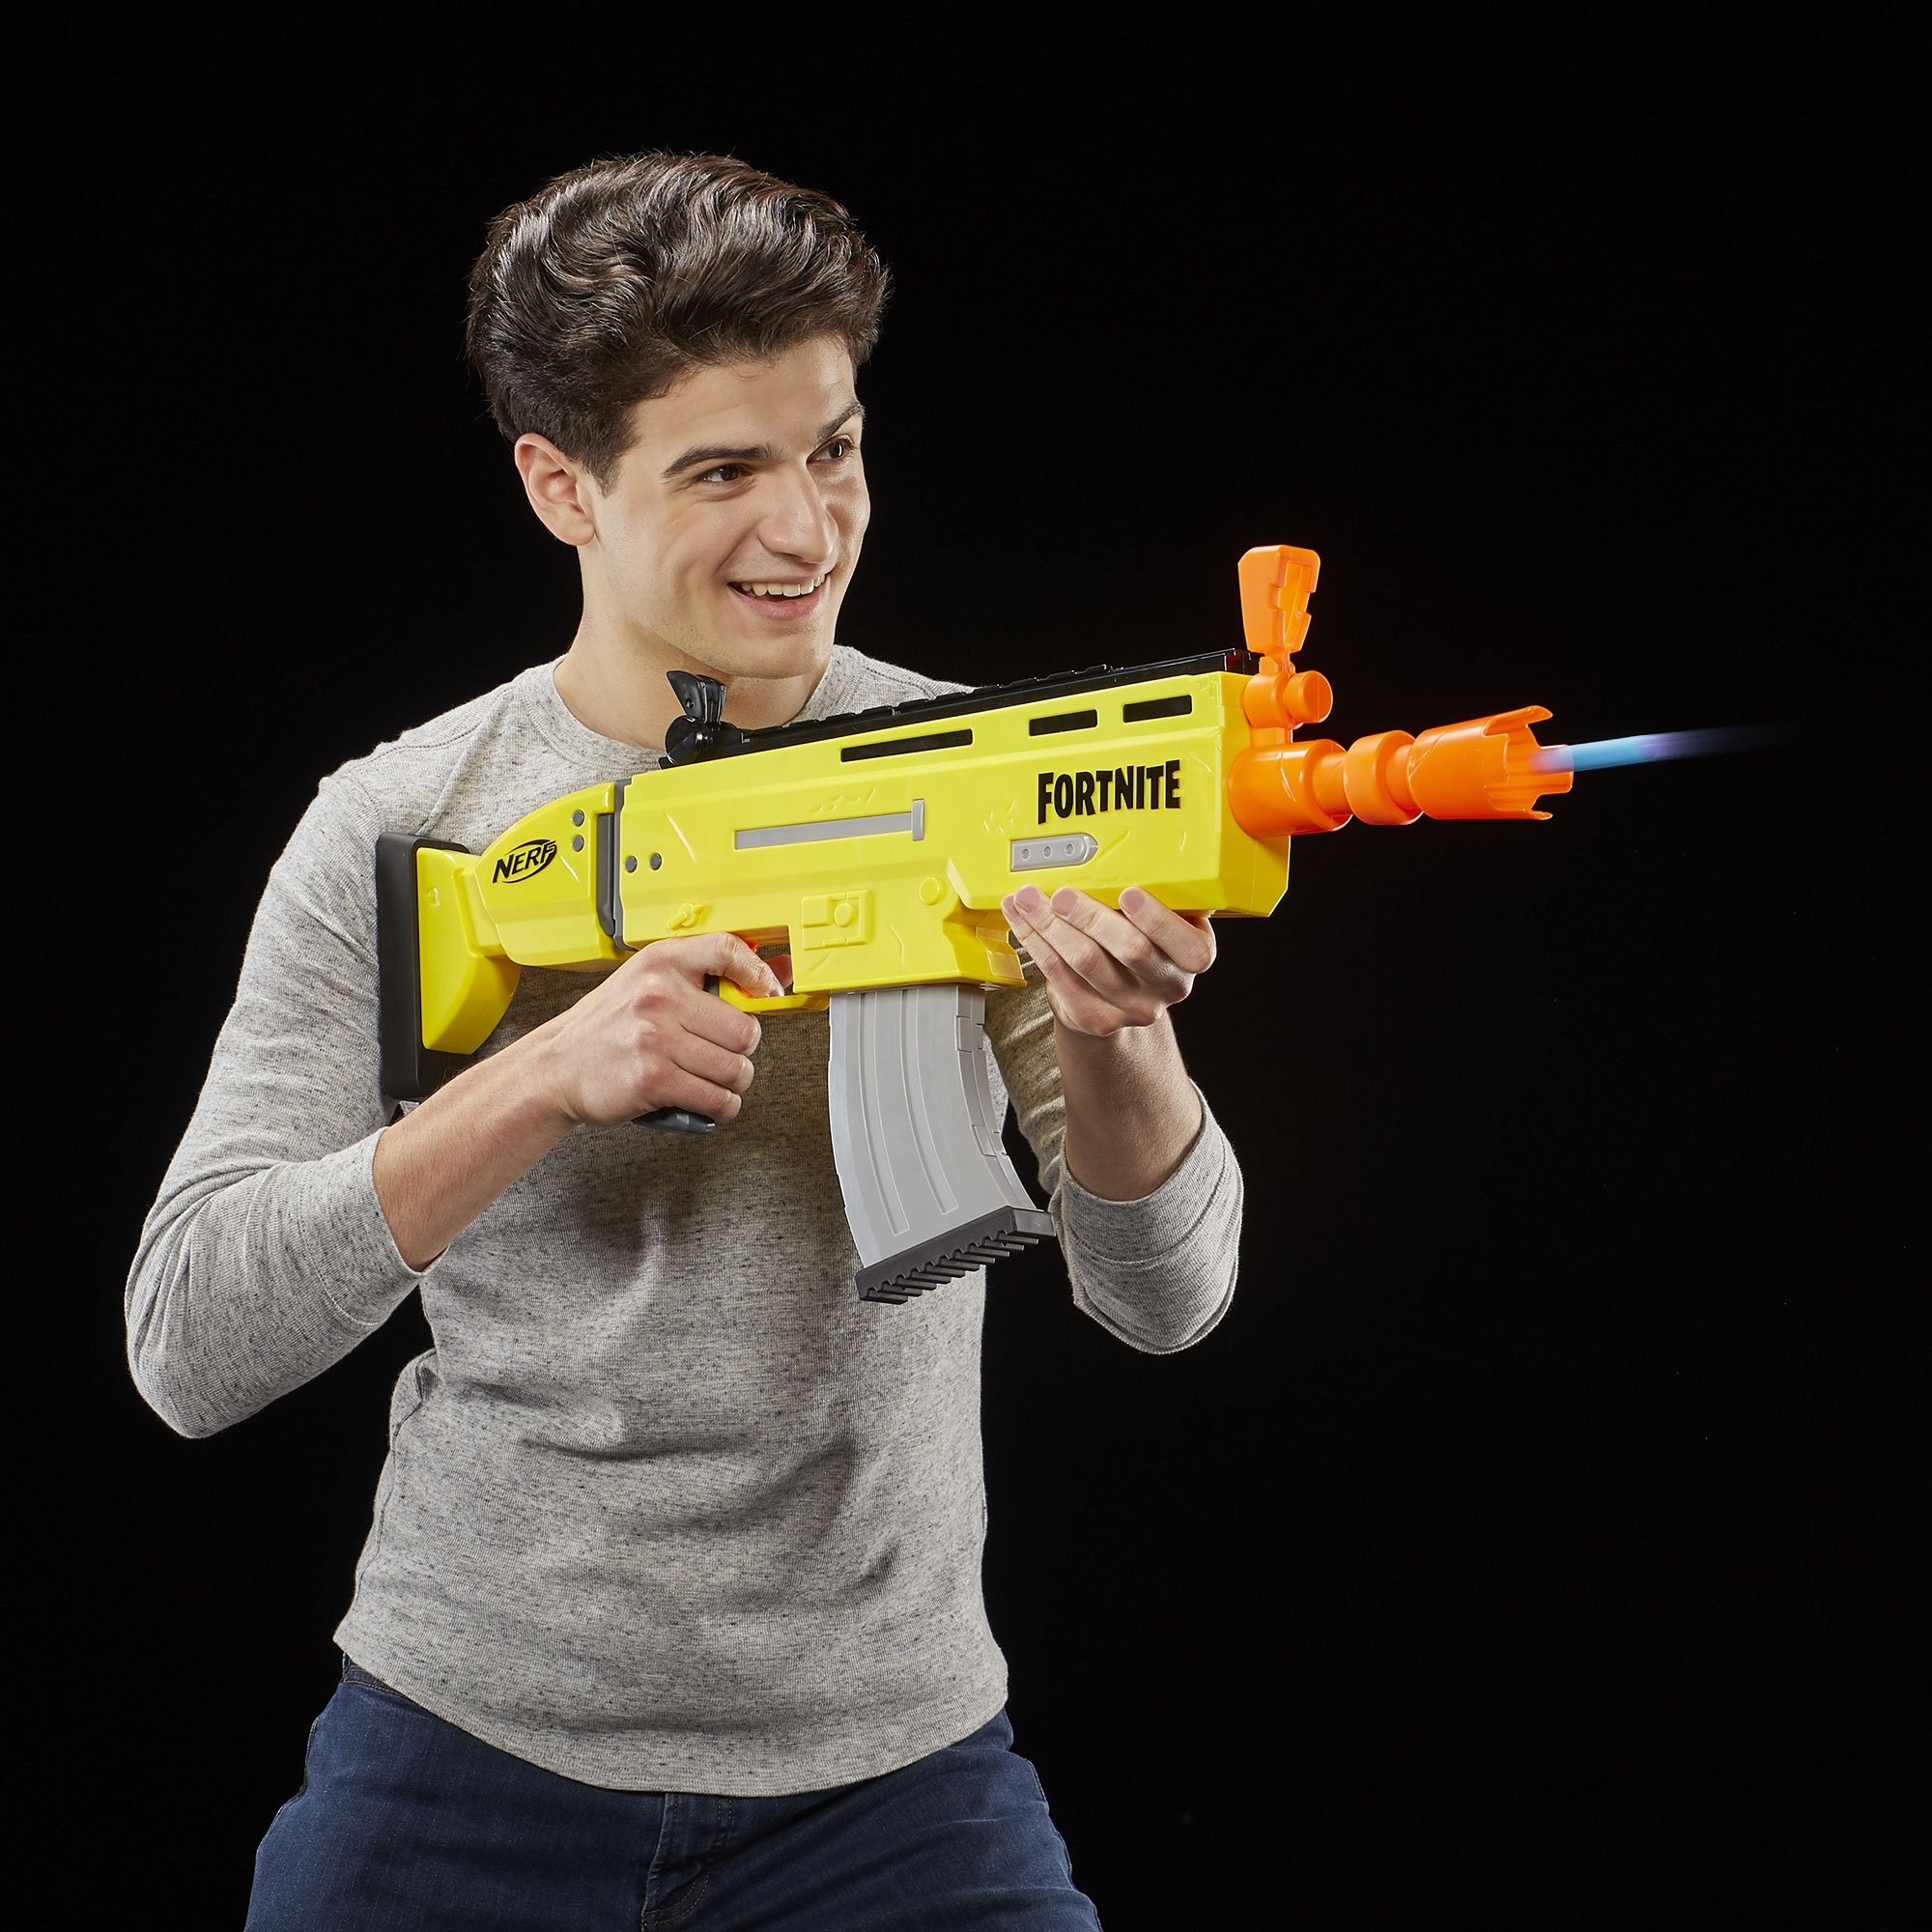 フォートナイト』銃玩具「ナーフ」ラインナップが発表、海外予約開始 